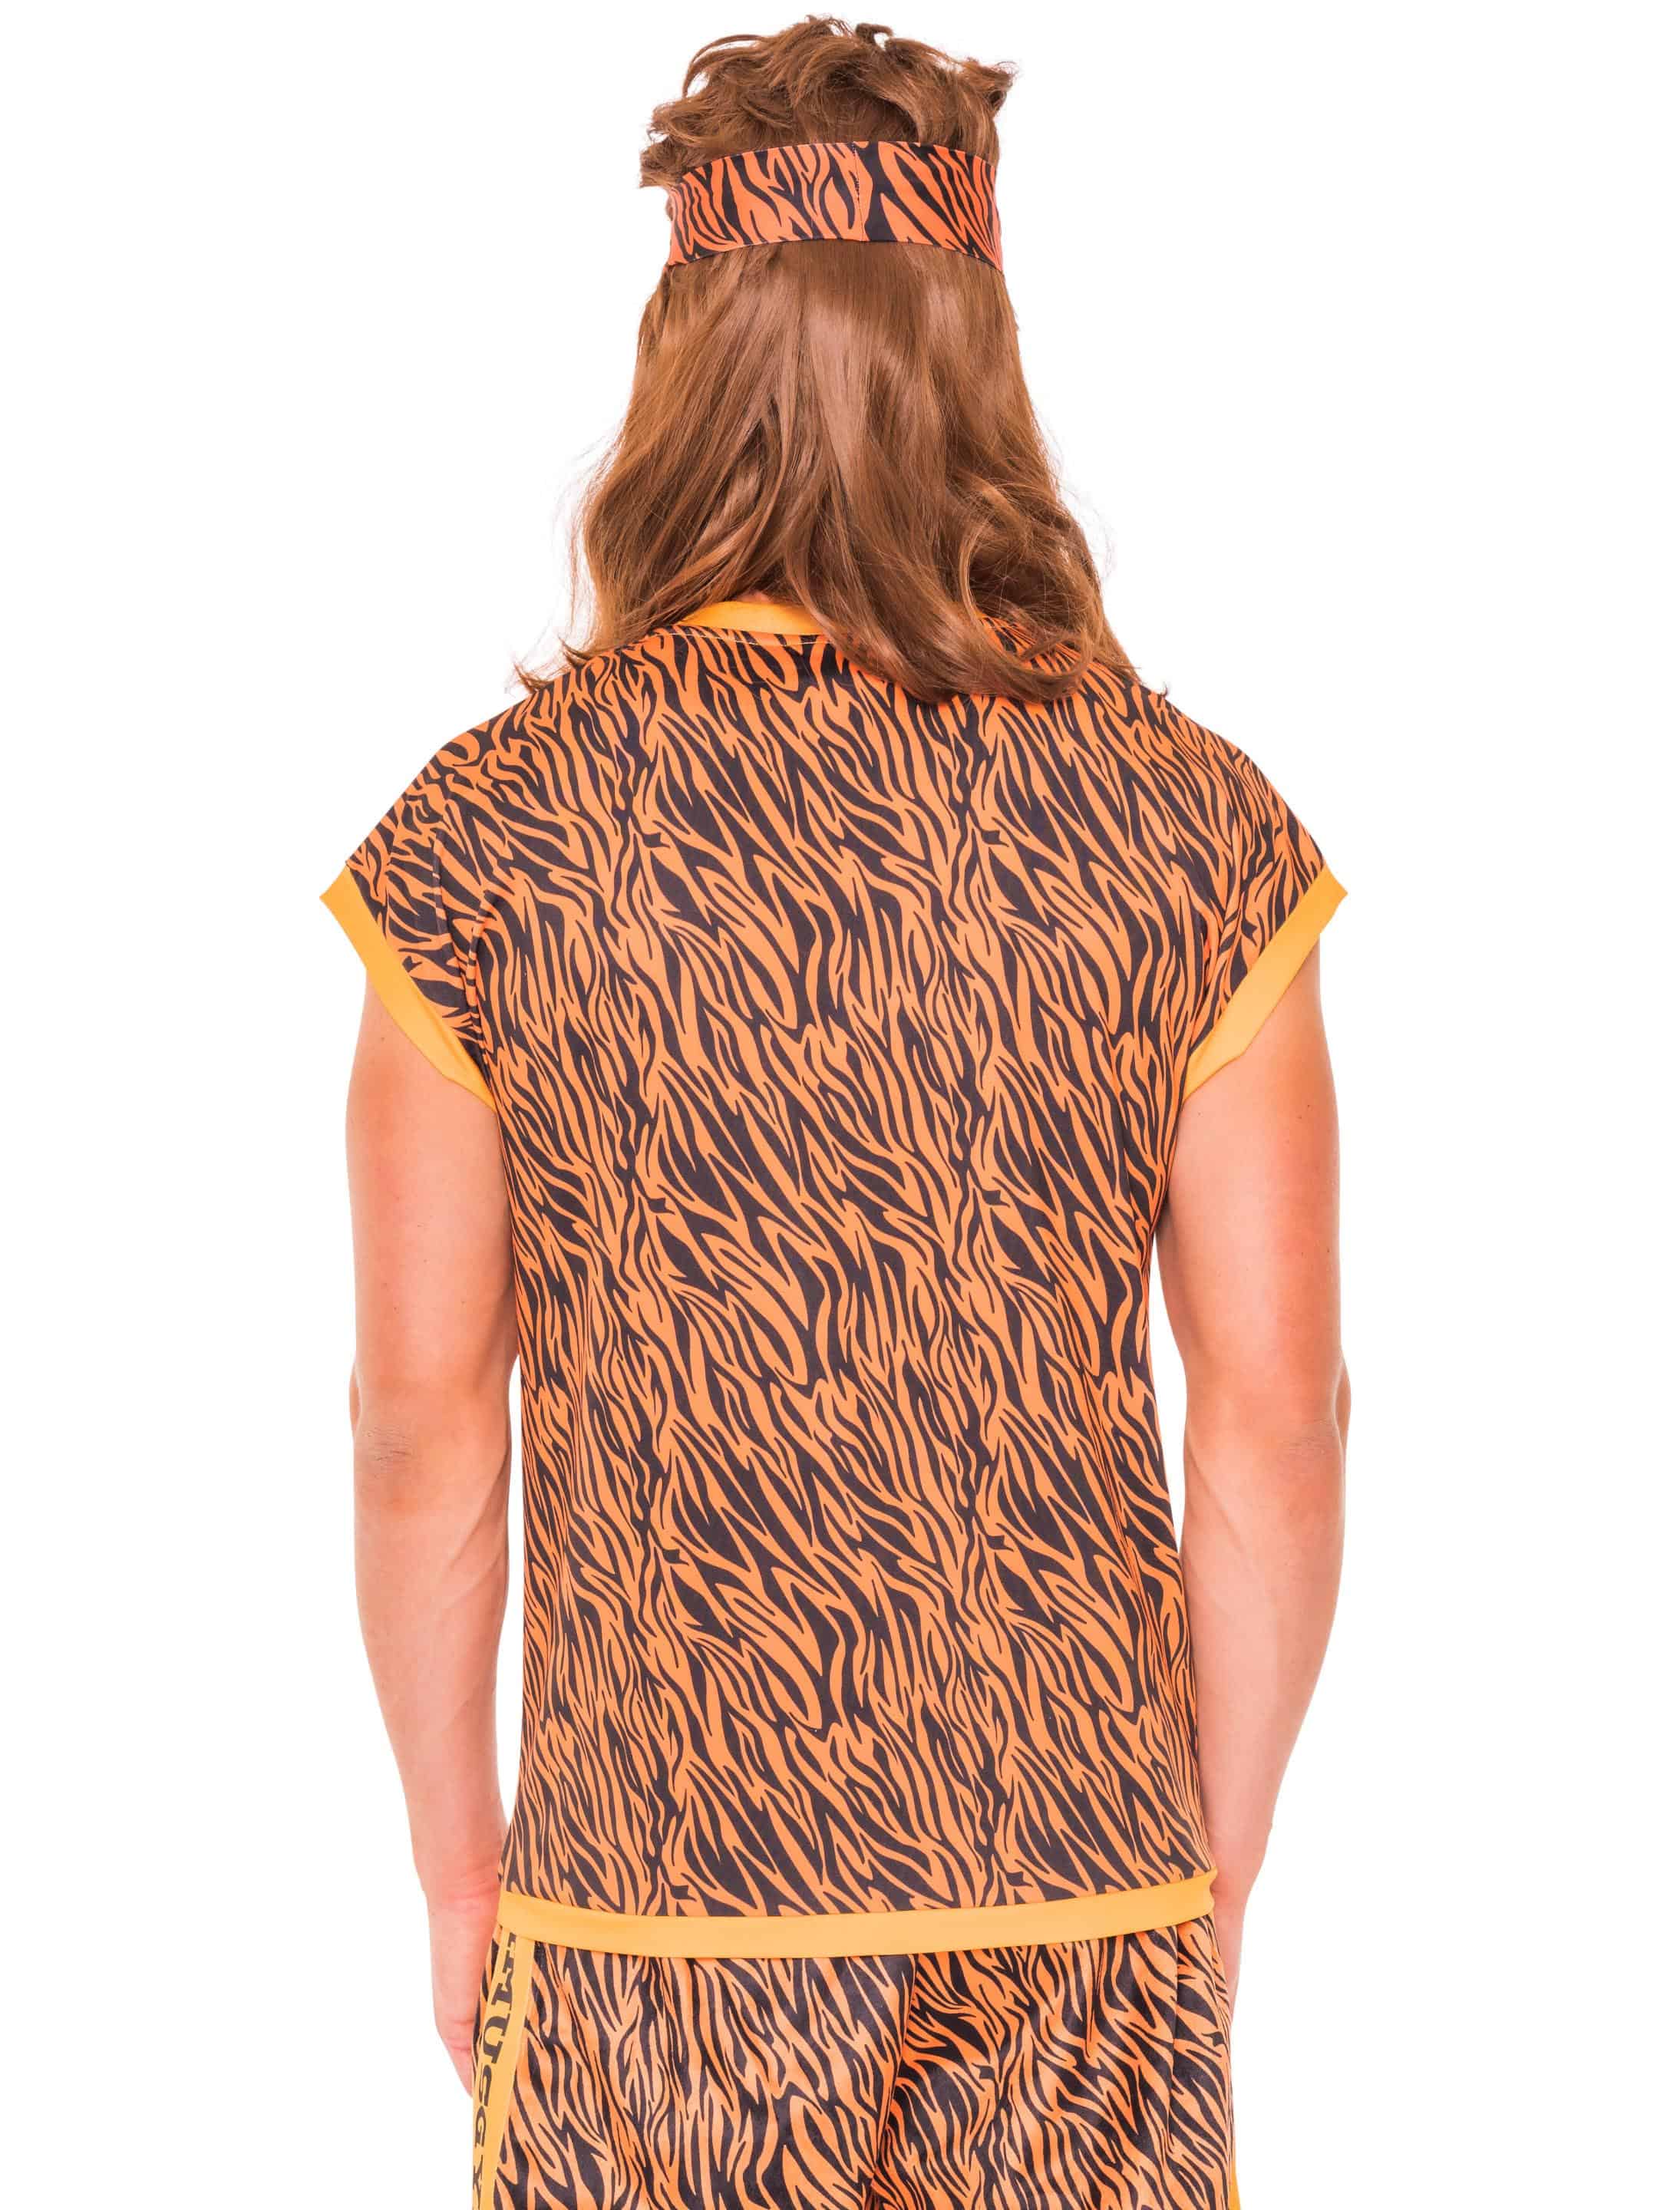 T-Shirt Rhythmusgymnastik Tiger schwarz/orange 2XL/3XL